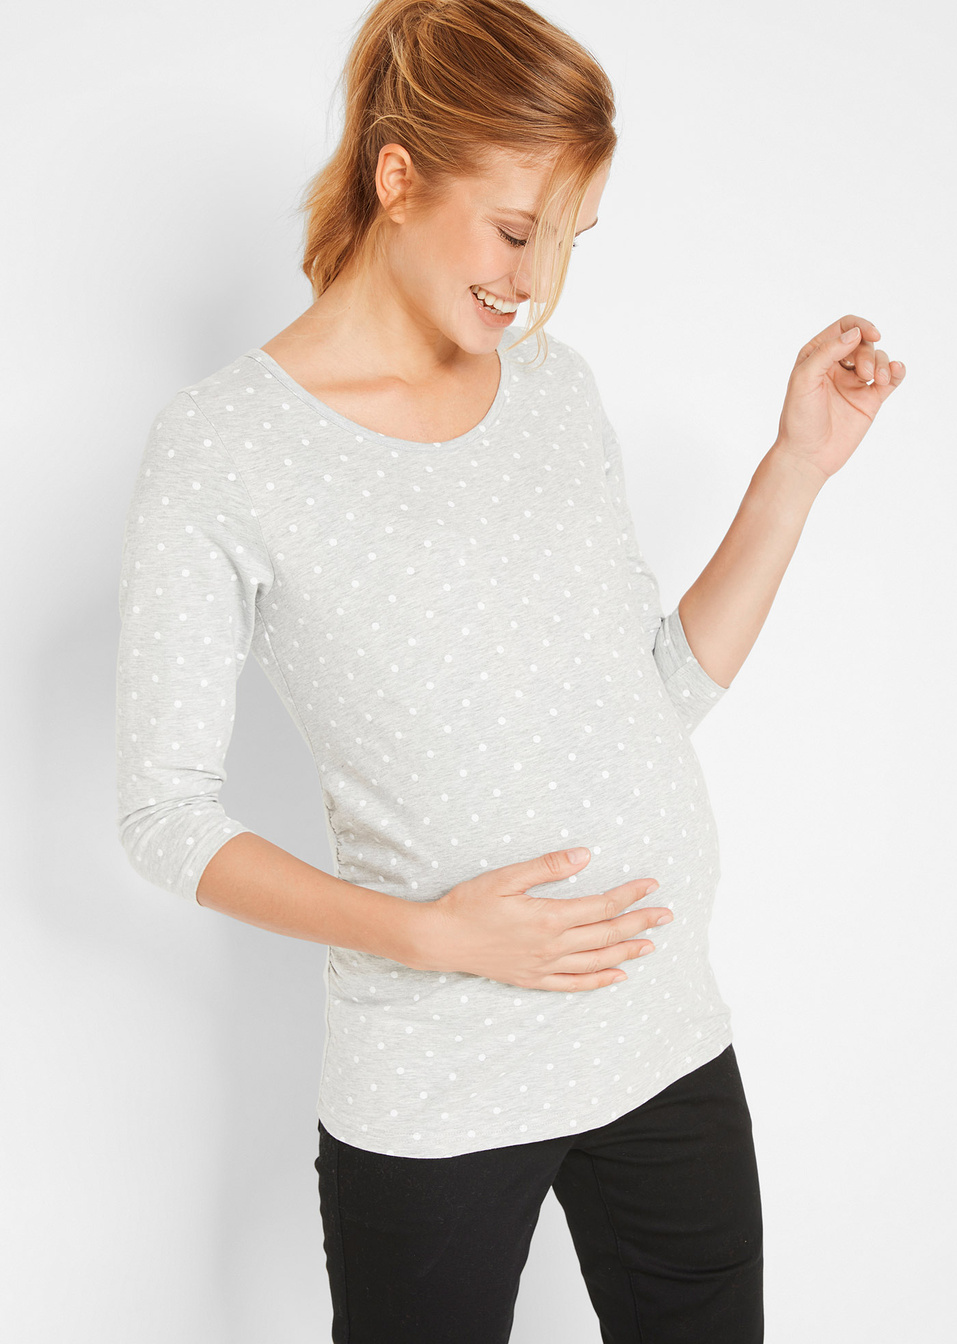 Μπλούζα εγκυμοσύνης από βιολογικό βαμβάκι (συσκευασία των 2)-bpc bonprix collection